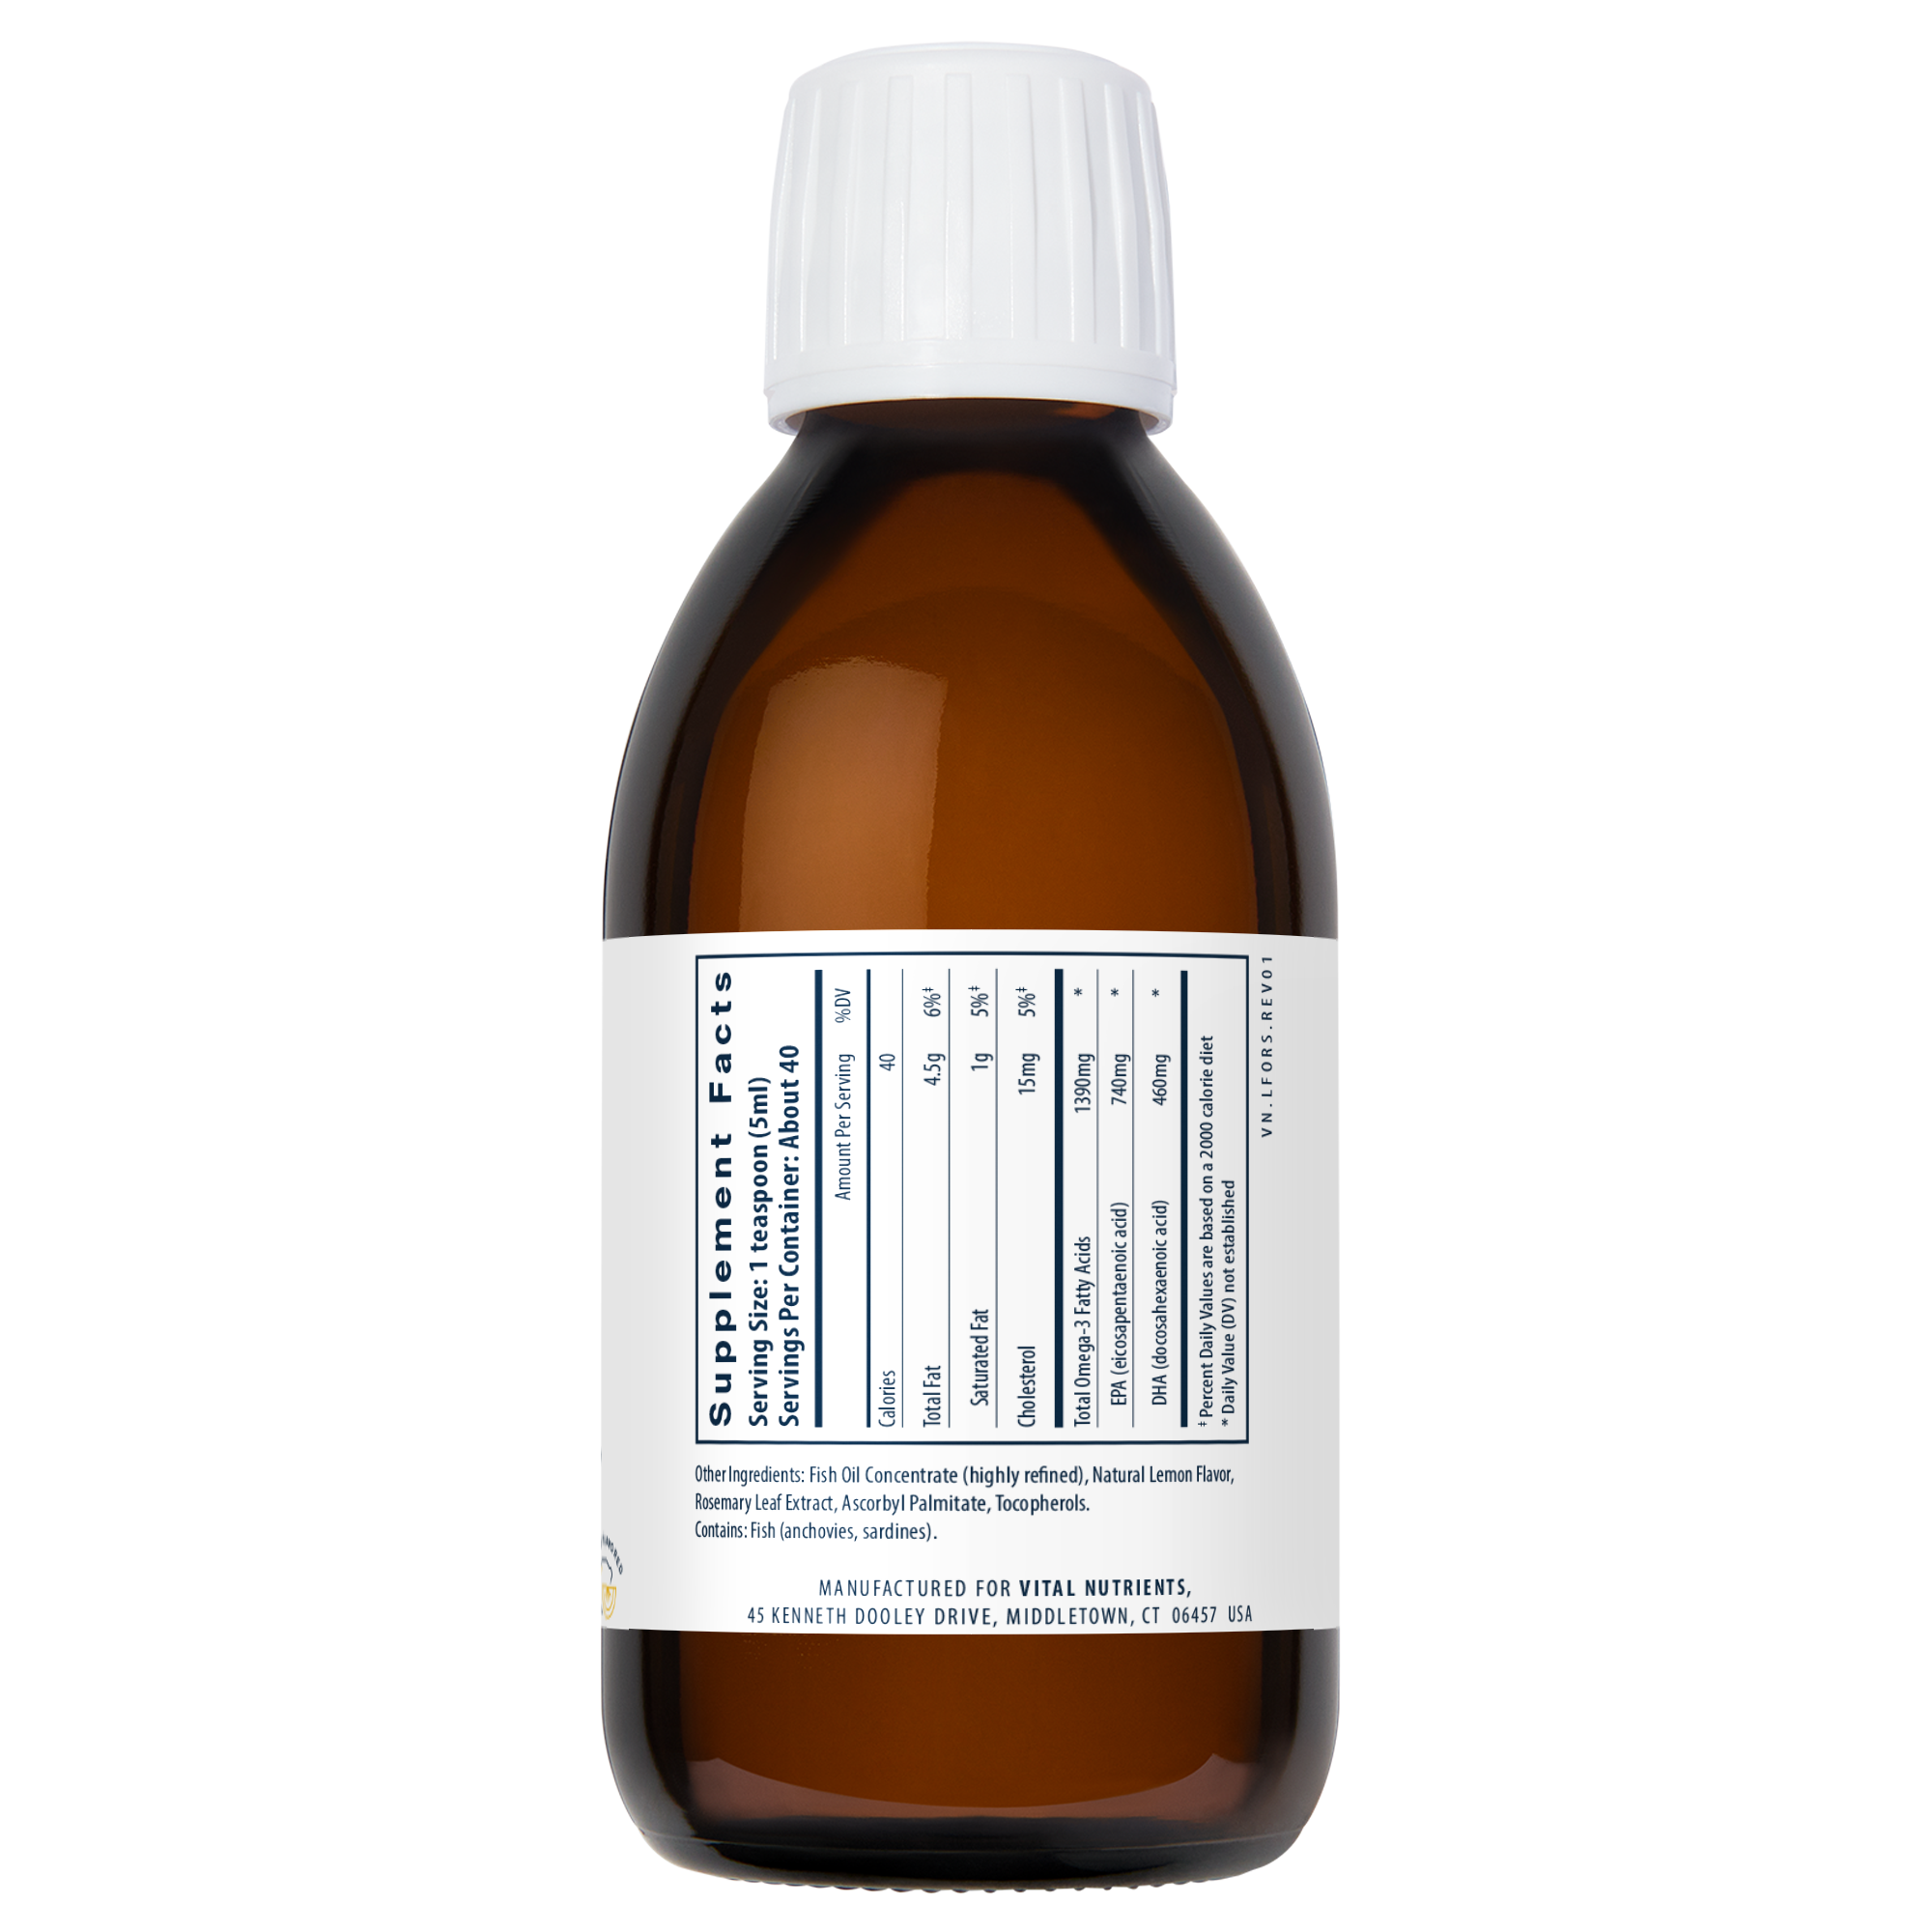 Ultra Pure Fish Oil 1400 (Lemon Flavour) - 200ml | Vital Nutrients